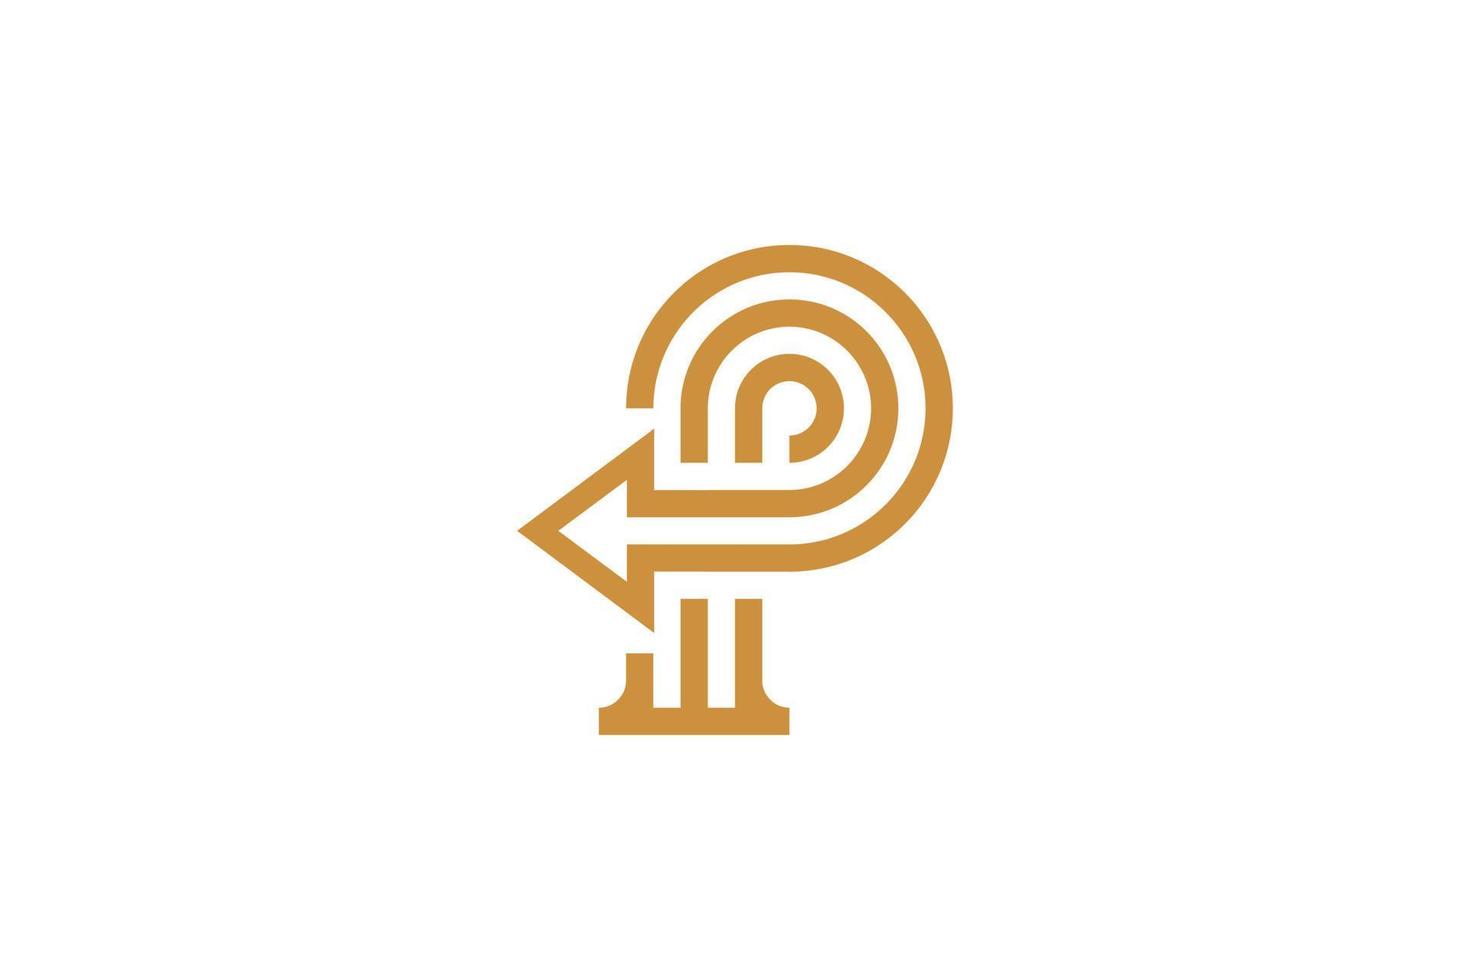 eerste p monoline logo sjabloon vector